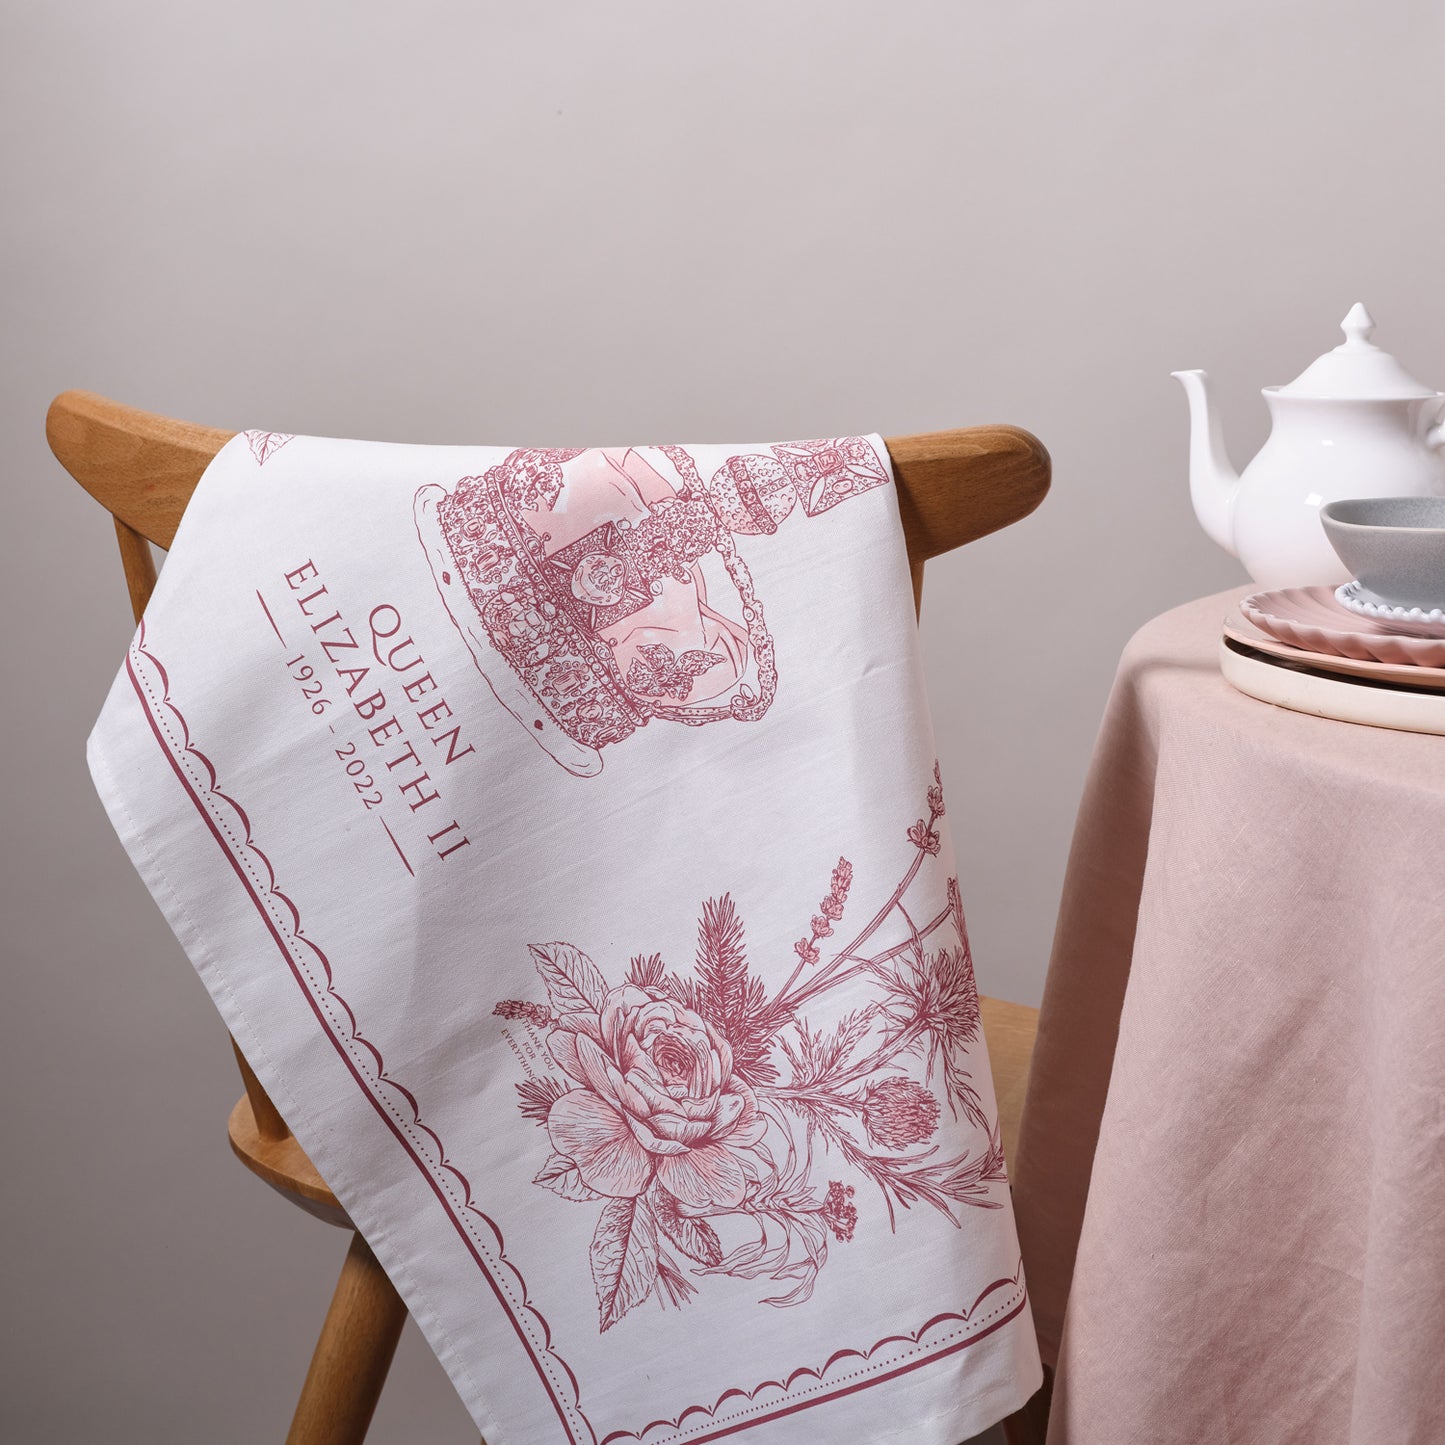 Queen Elizabeth II Commemorative Tea Towel